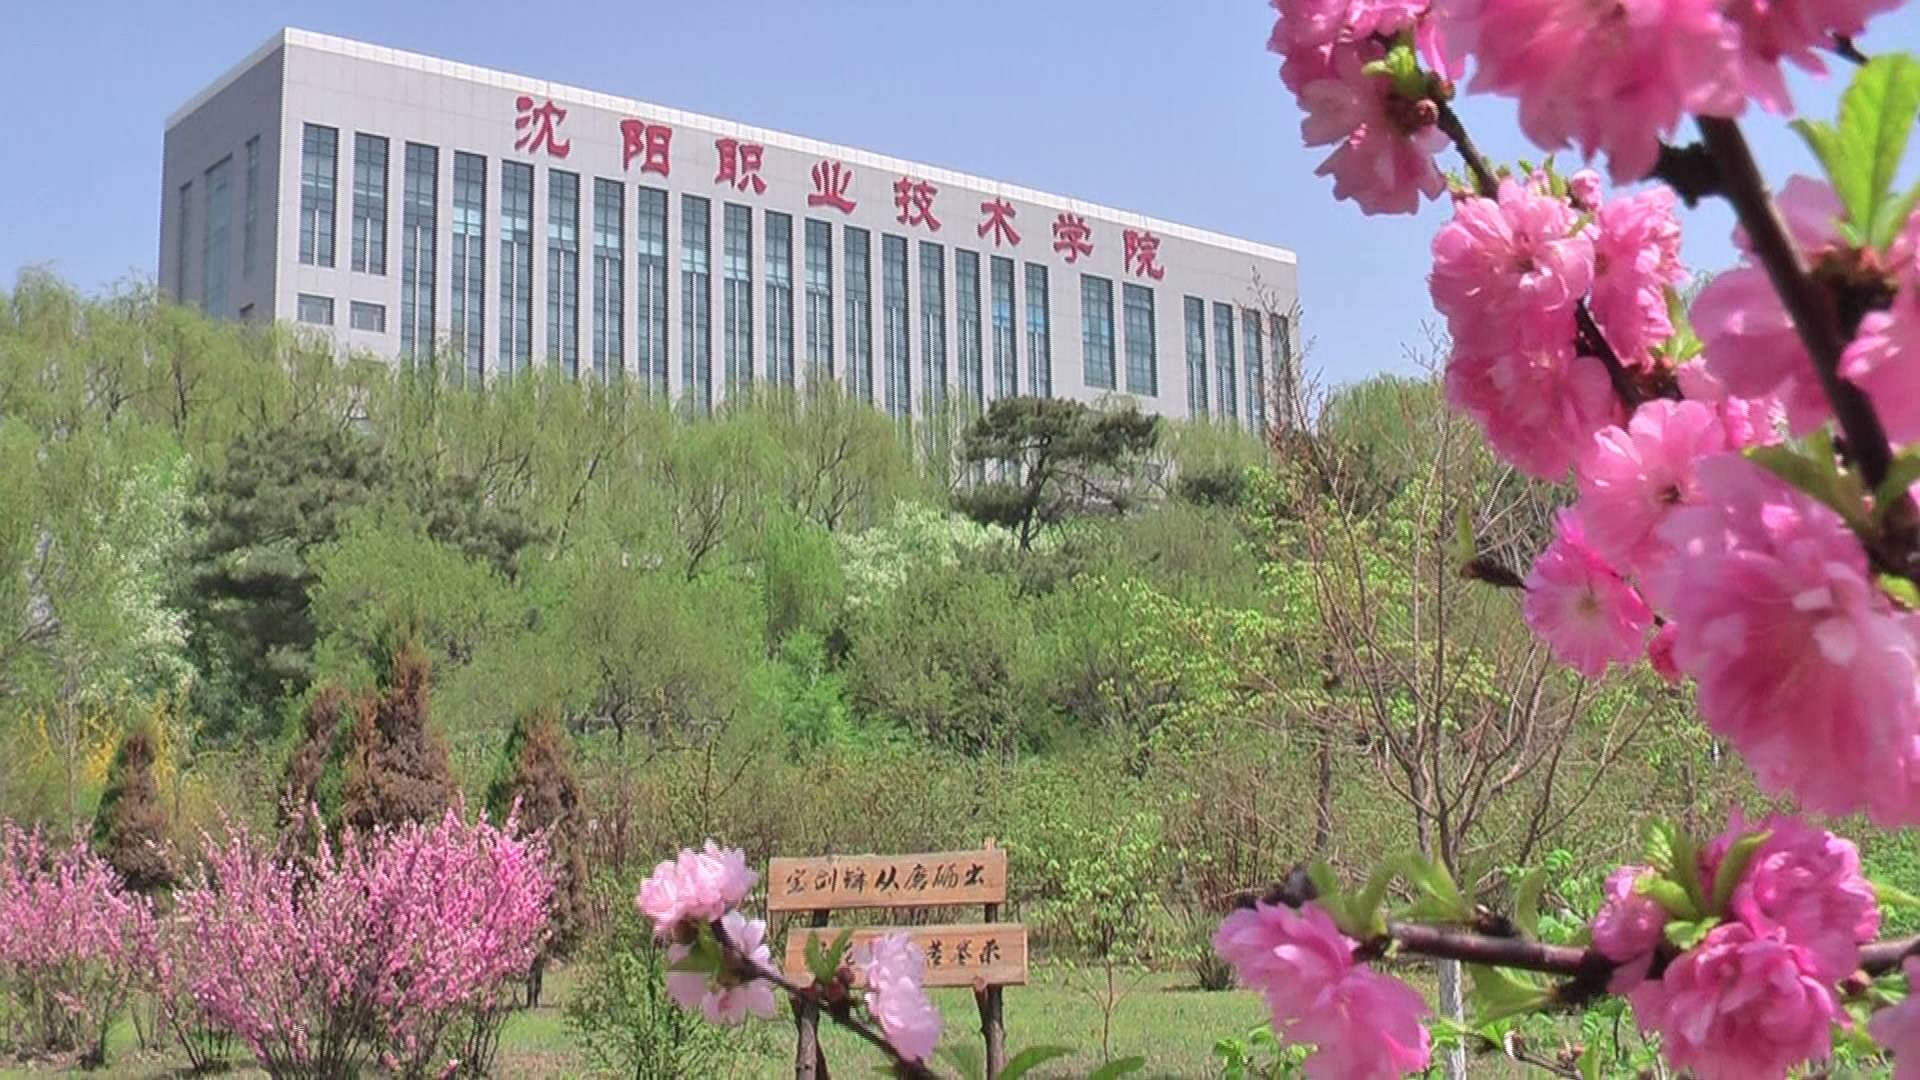 沈阳职工大学,沈阳市机电工业学校3所院校合并而成,是教育部首批现代